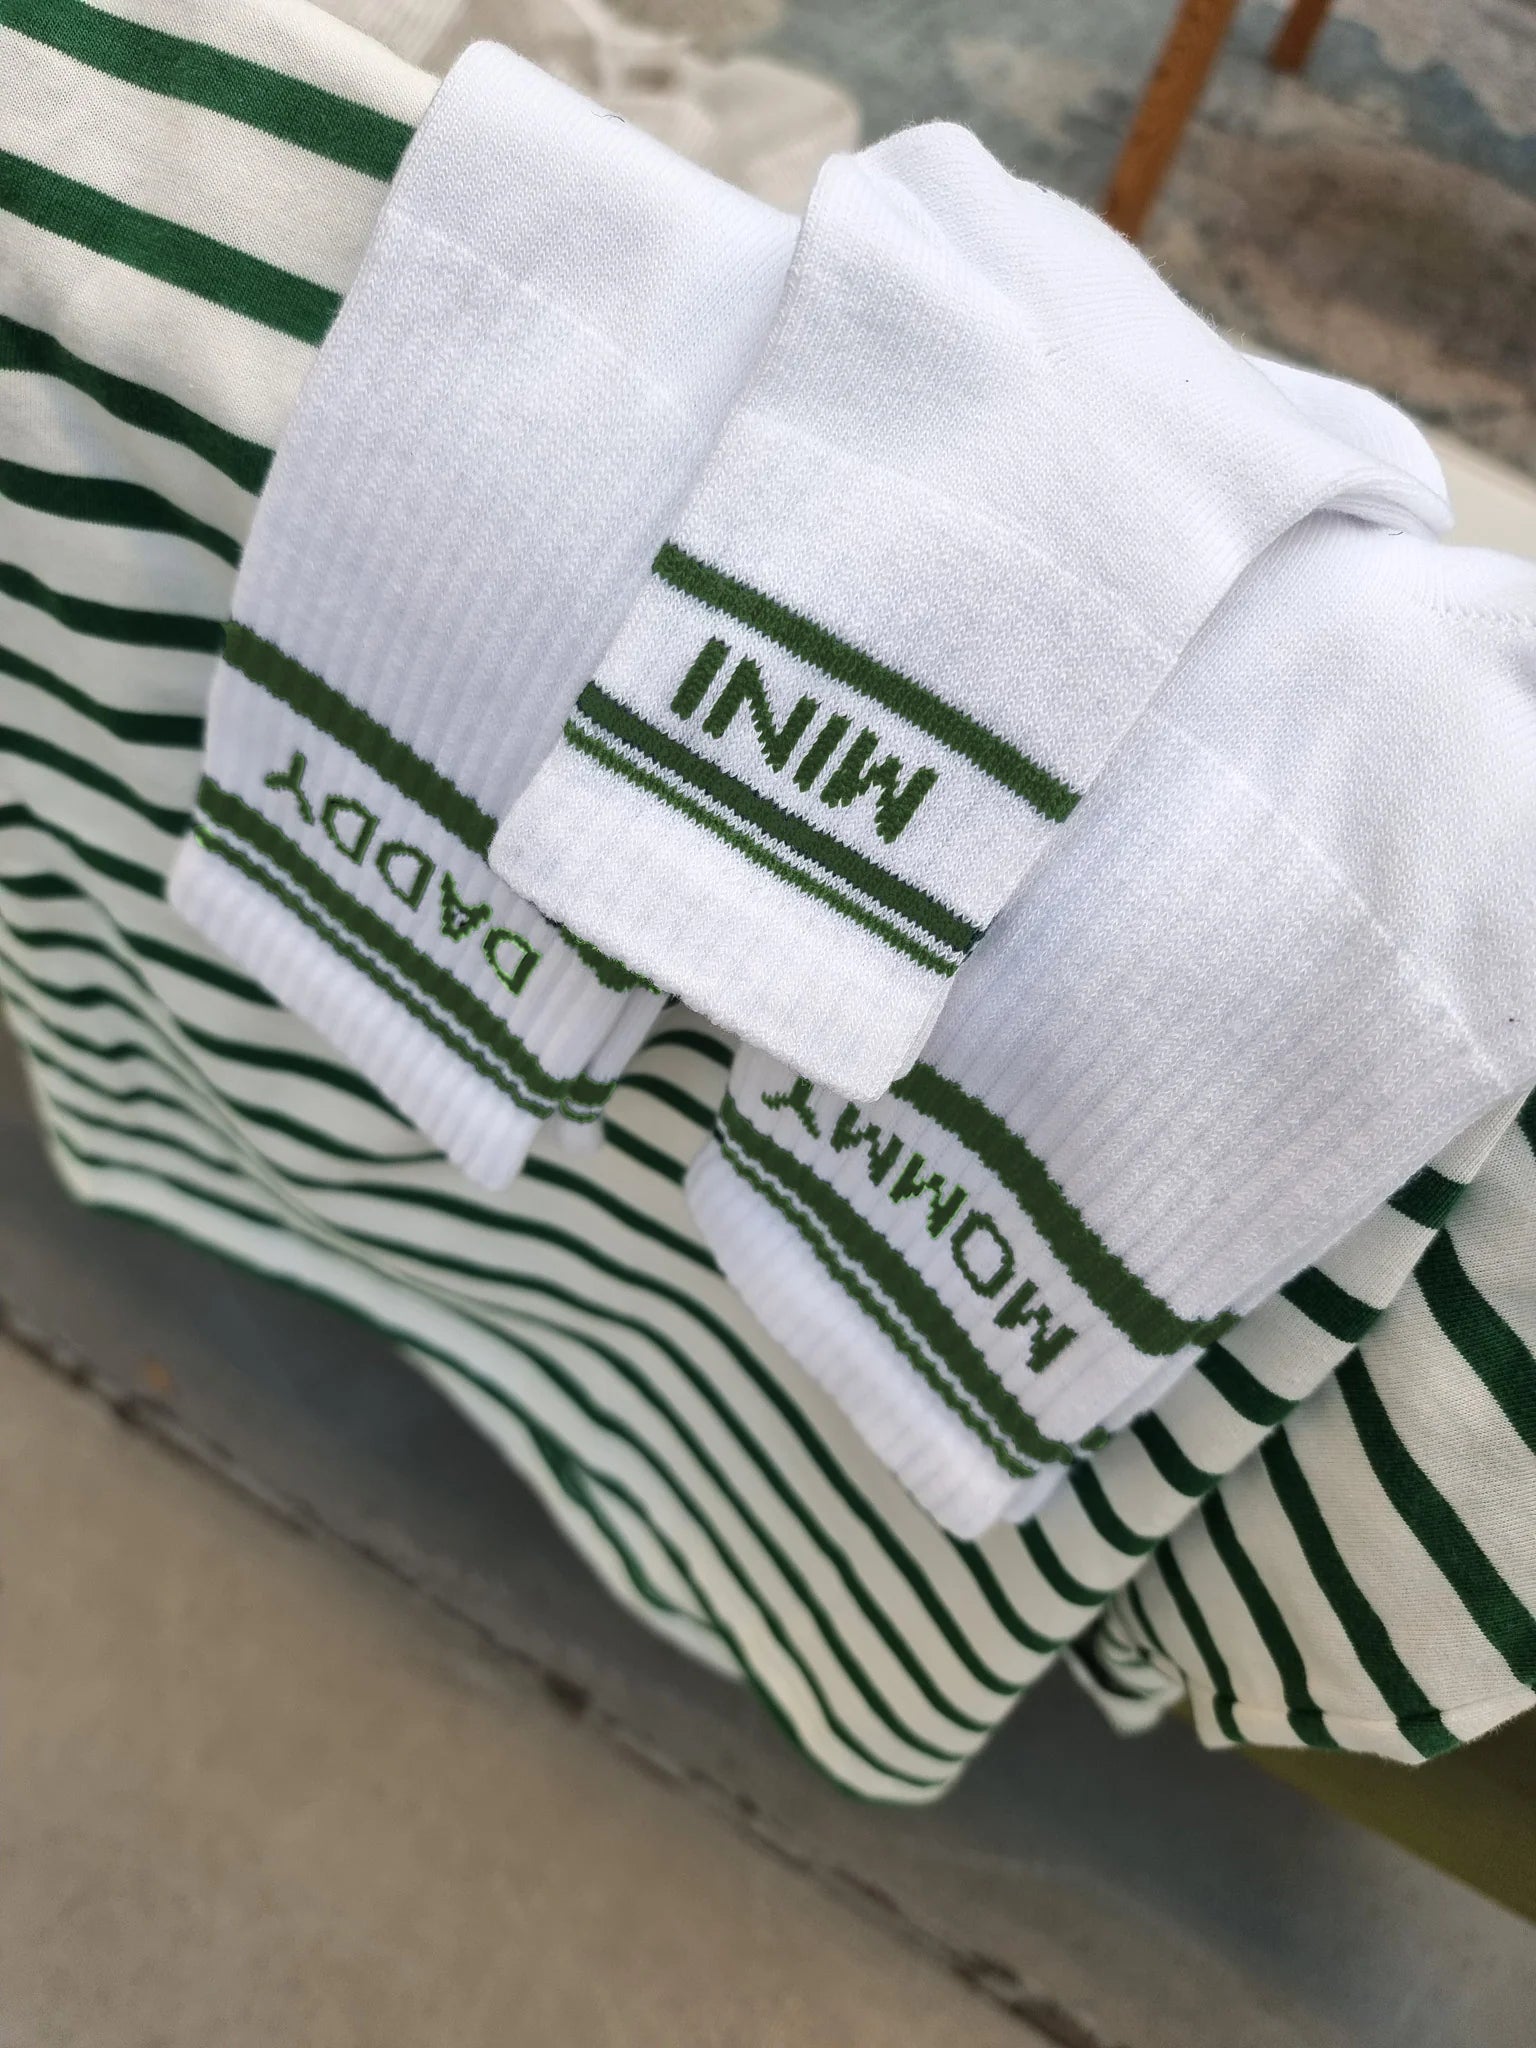 Socken MINI striped-green